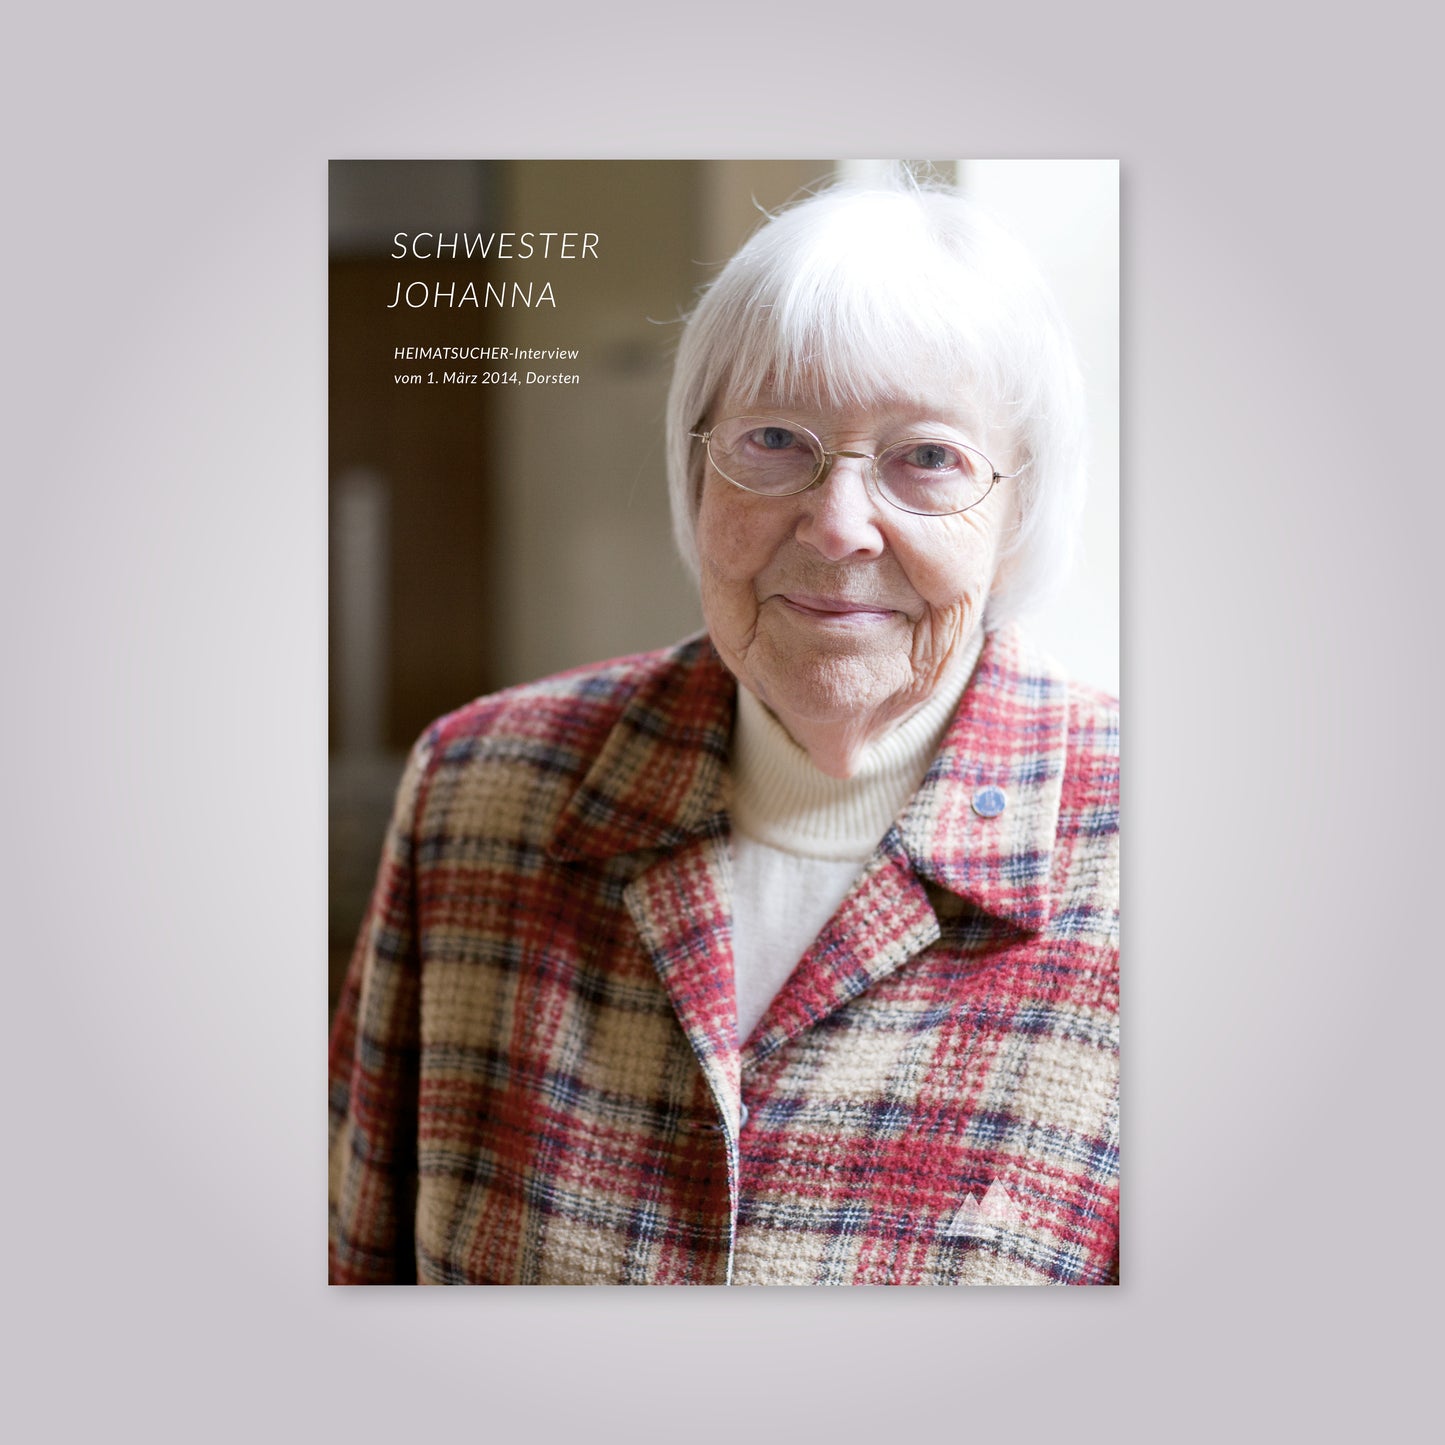 Magazin-Cover: alte Frau mit weißen Haaren und Brille trägt ein kariertes Jackett.